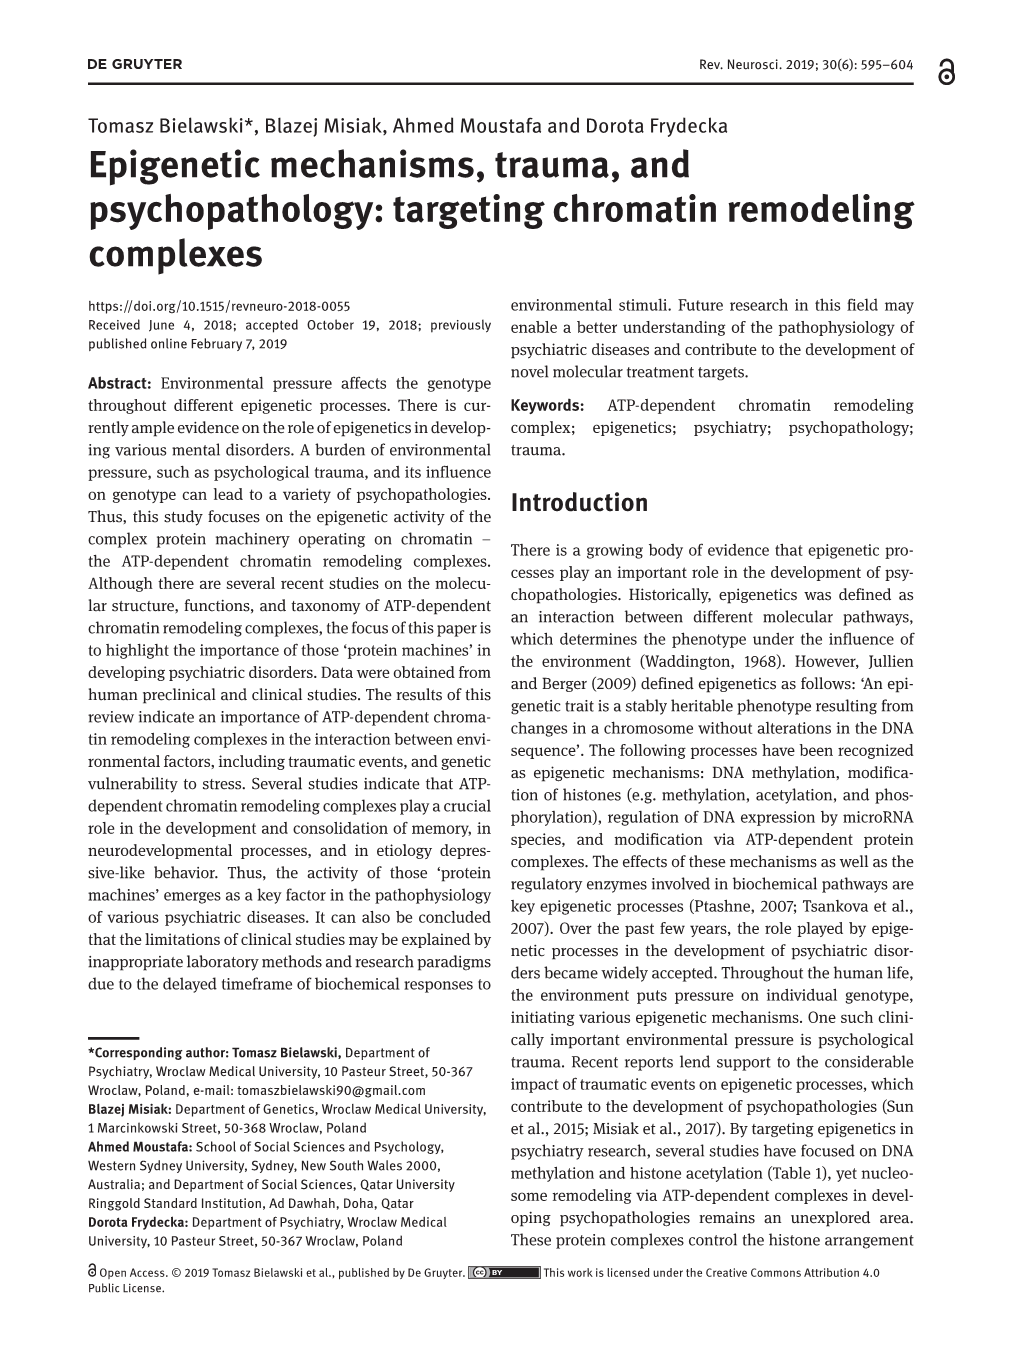 Epigenetic Mechanisms, Trauma, and Psychopathology: Targeting Chromatin Remodeling Complexes Environmental Stimuli